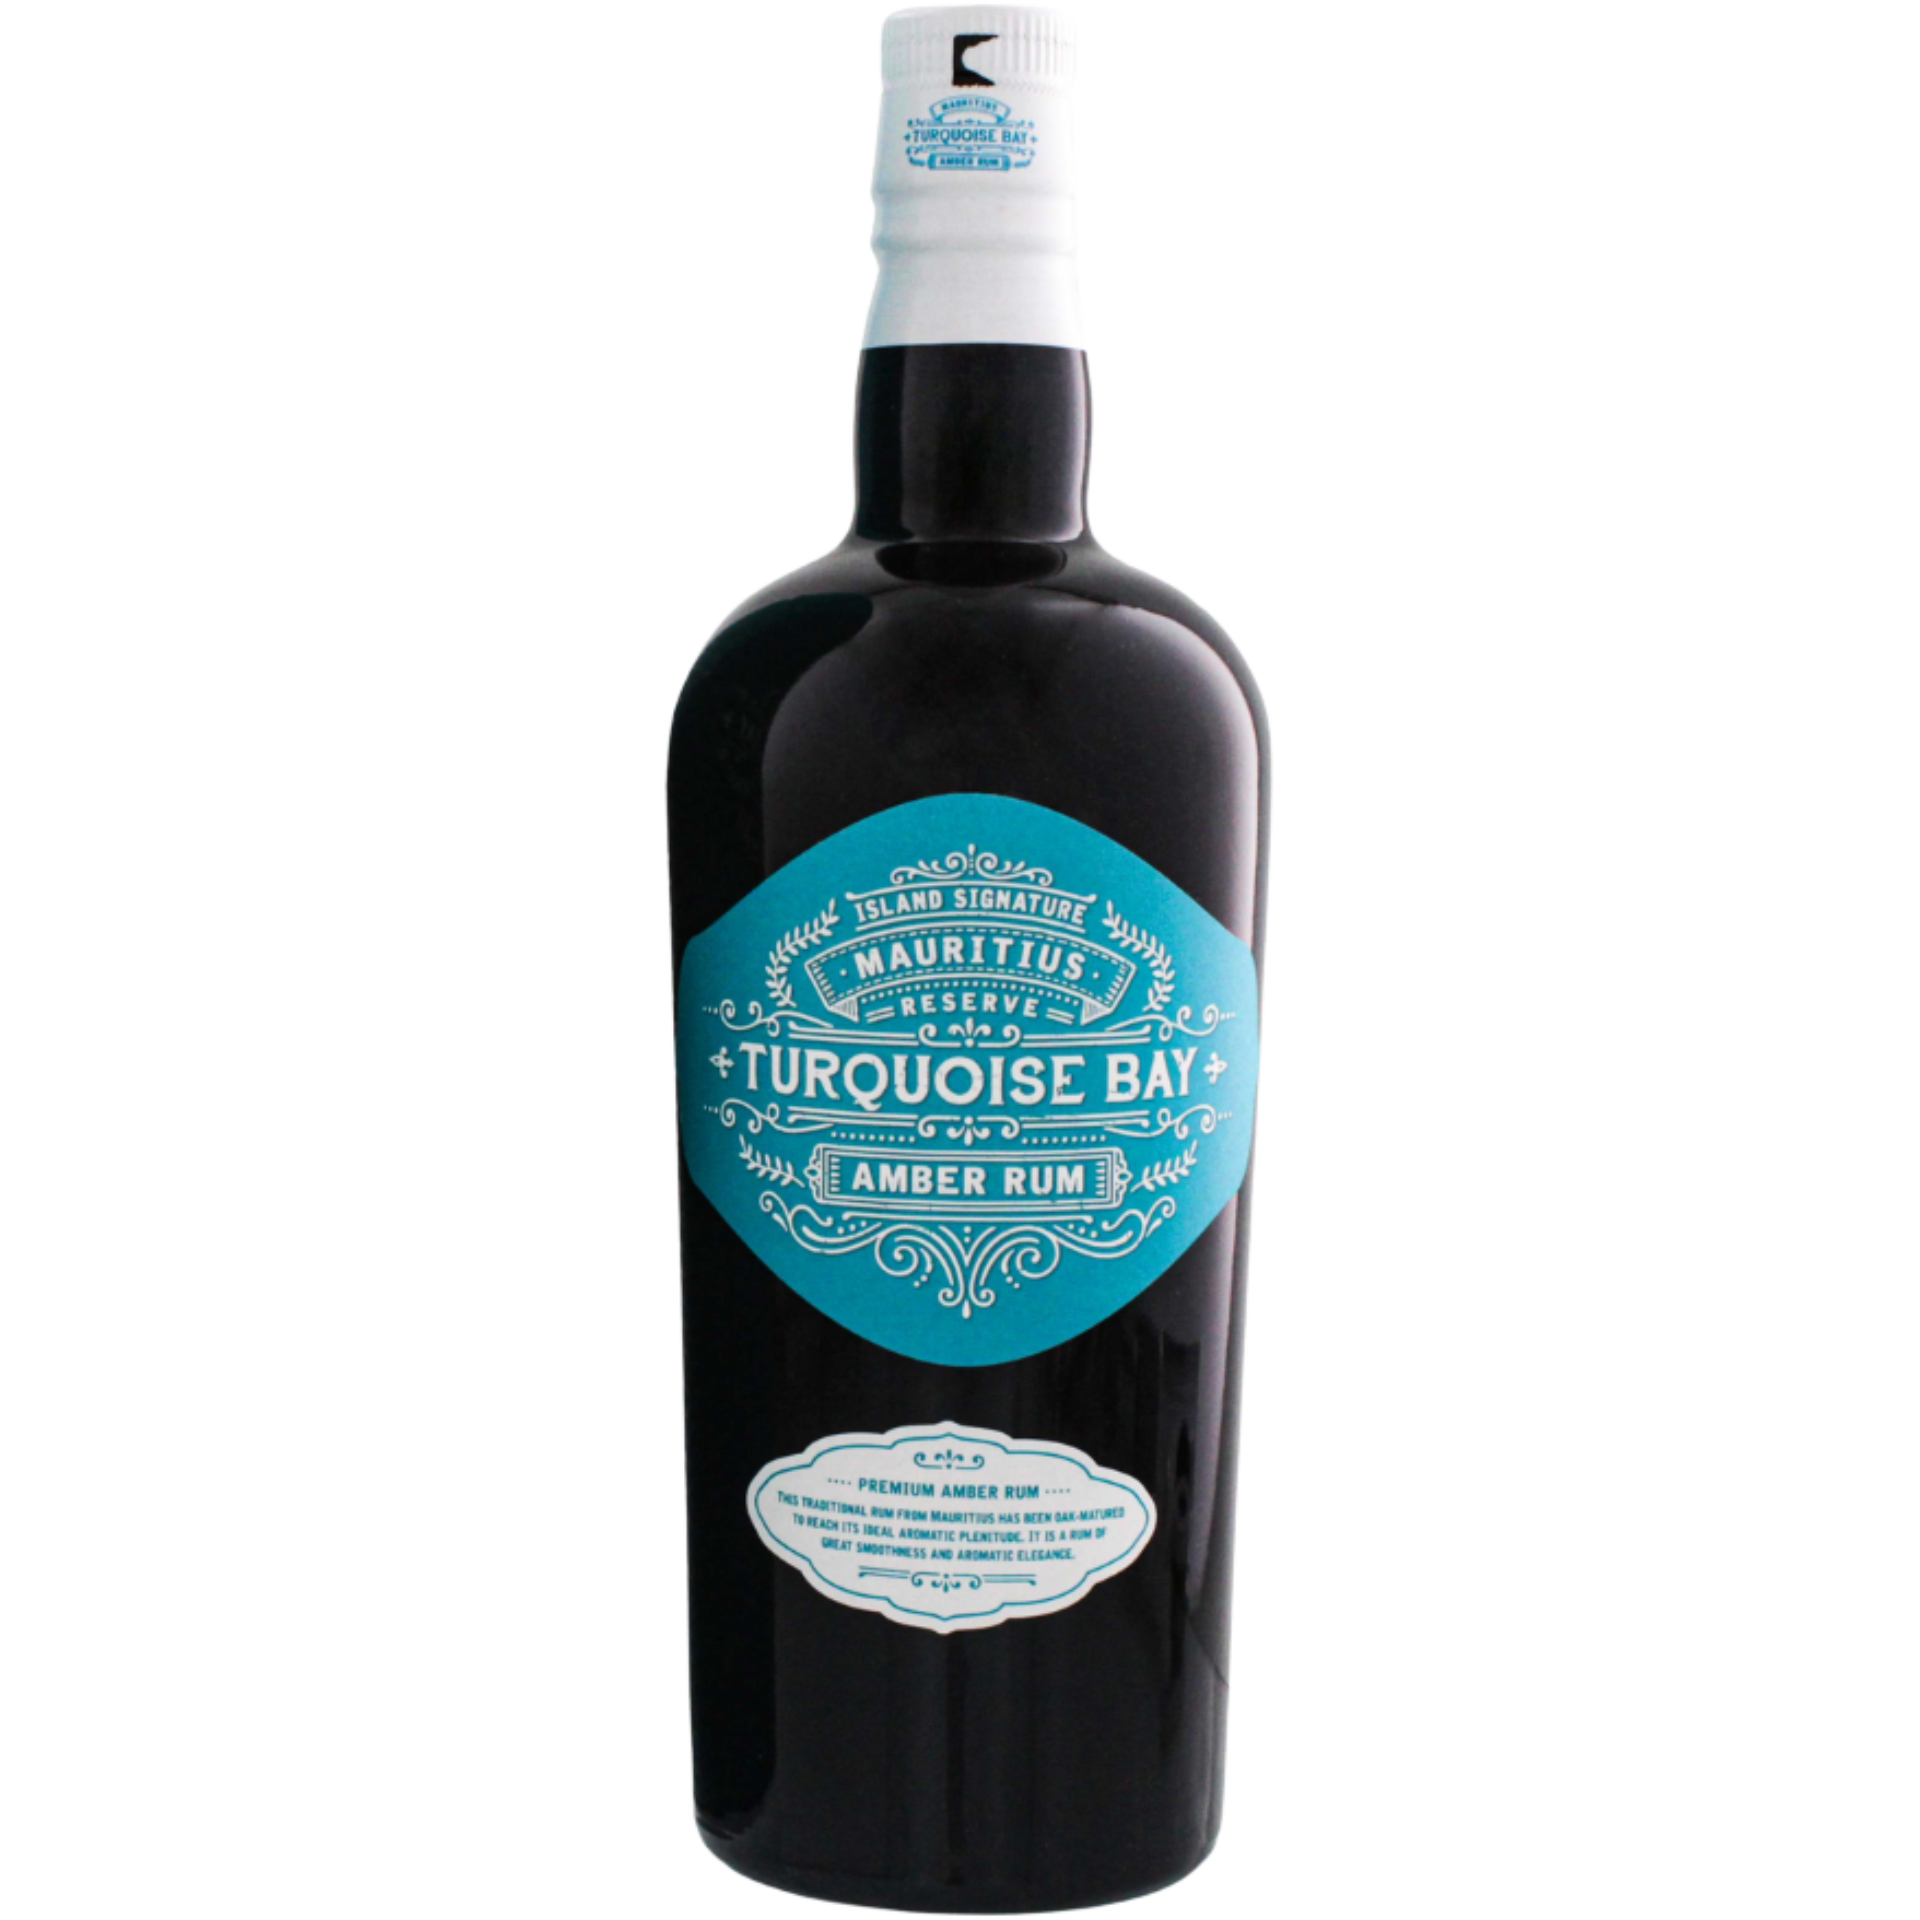 Island Signature Turquoise Bay Amber Rum 40% 0,7l